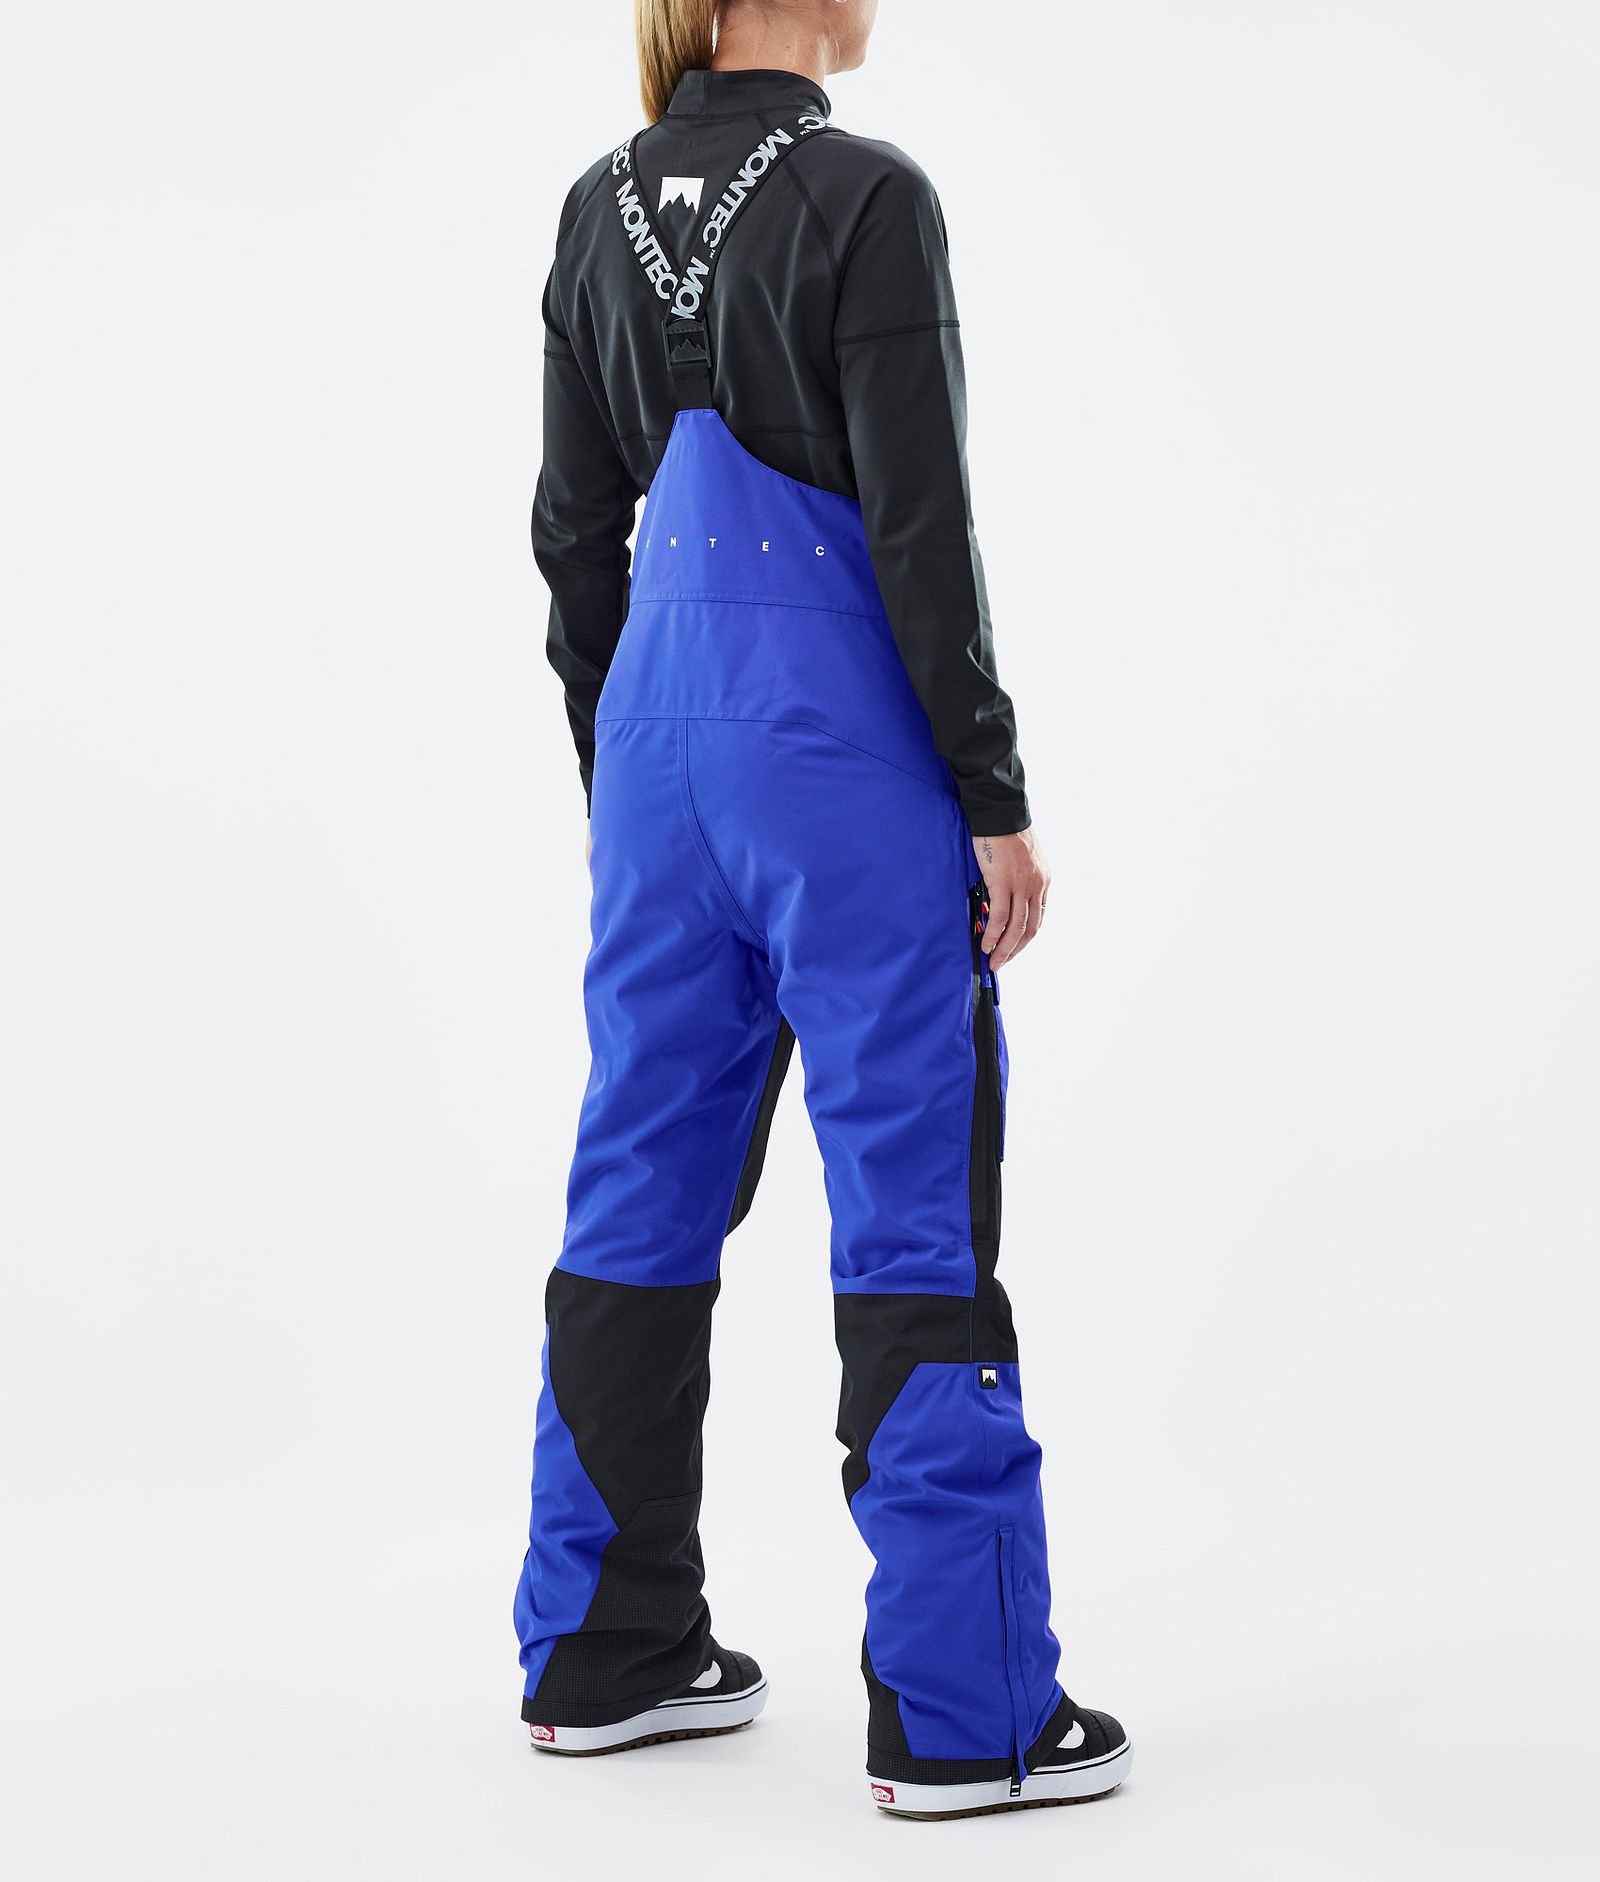 Fawk W Pantaloni Snowboard Donna Cobalt Blue/Black Renewed, Immagine 4 di 7